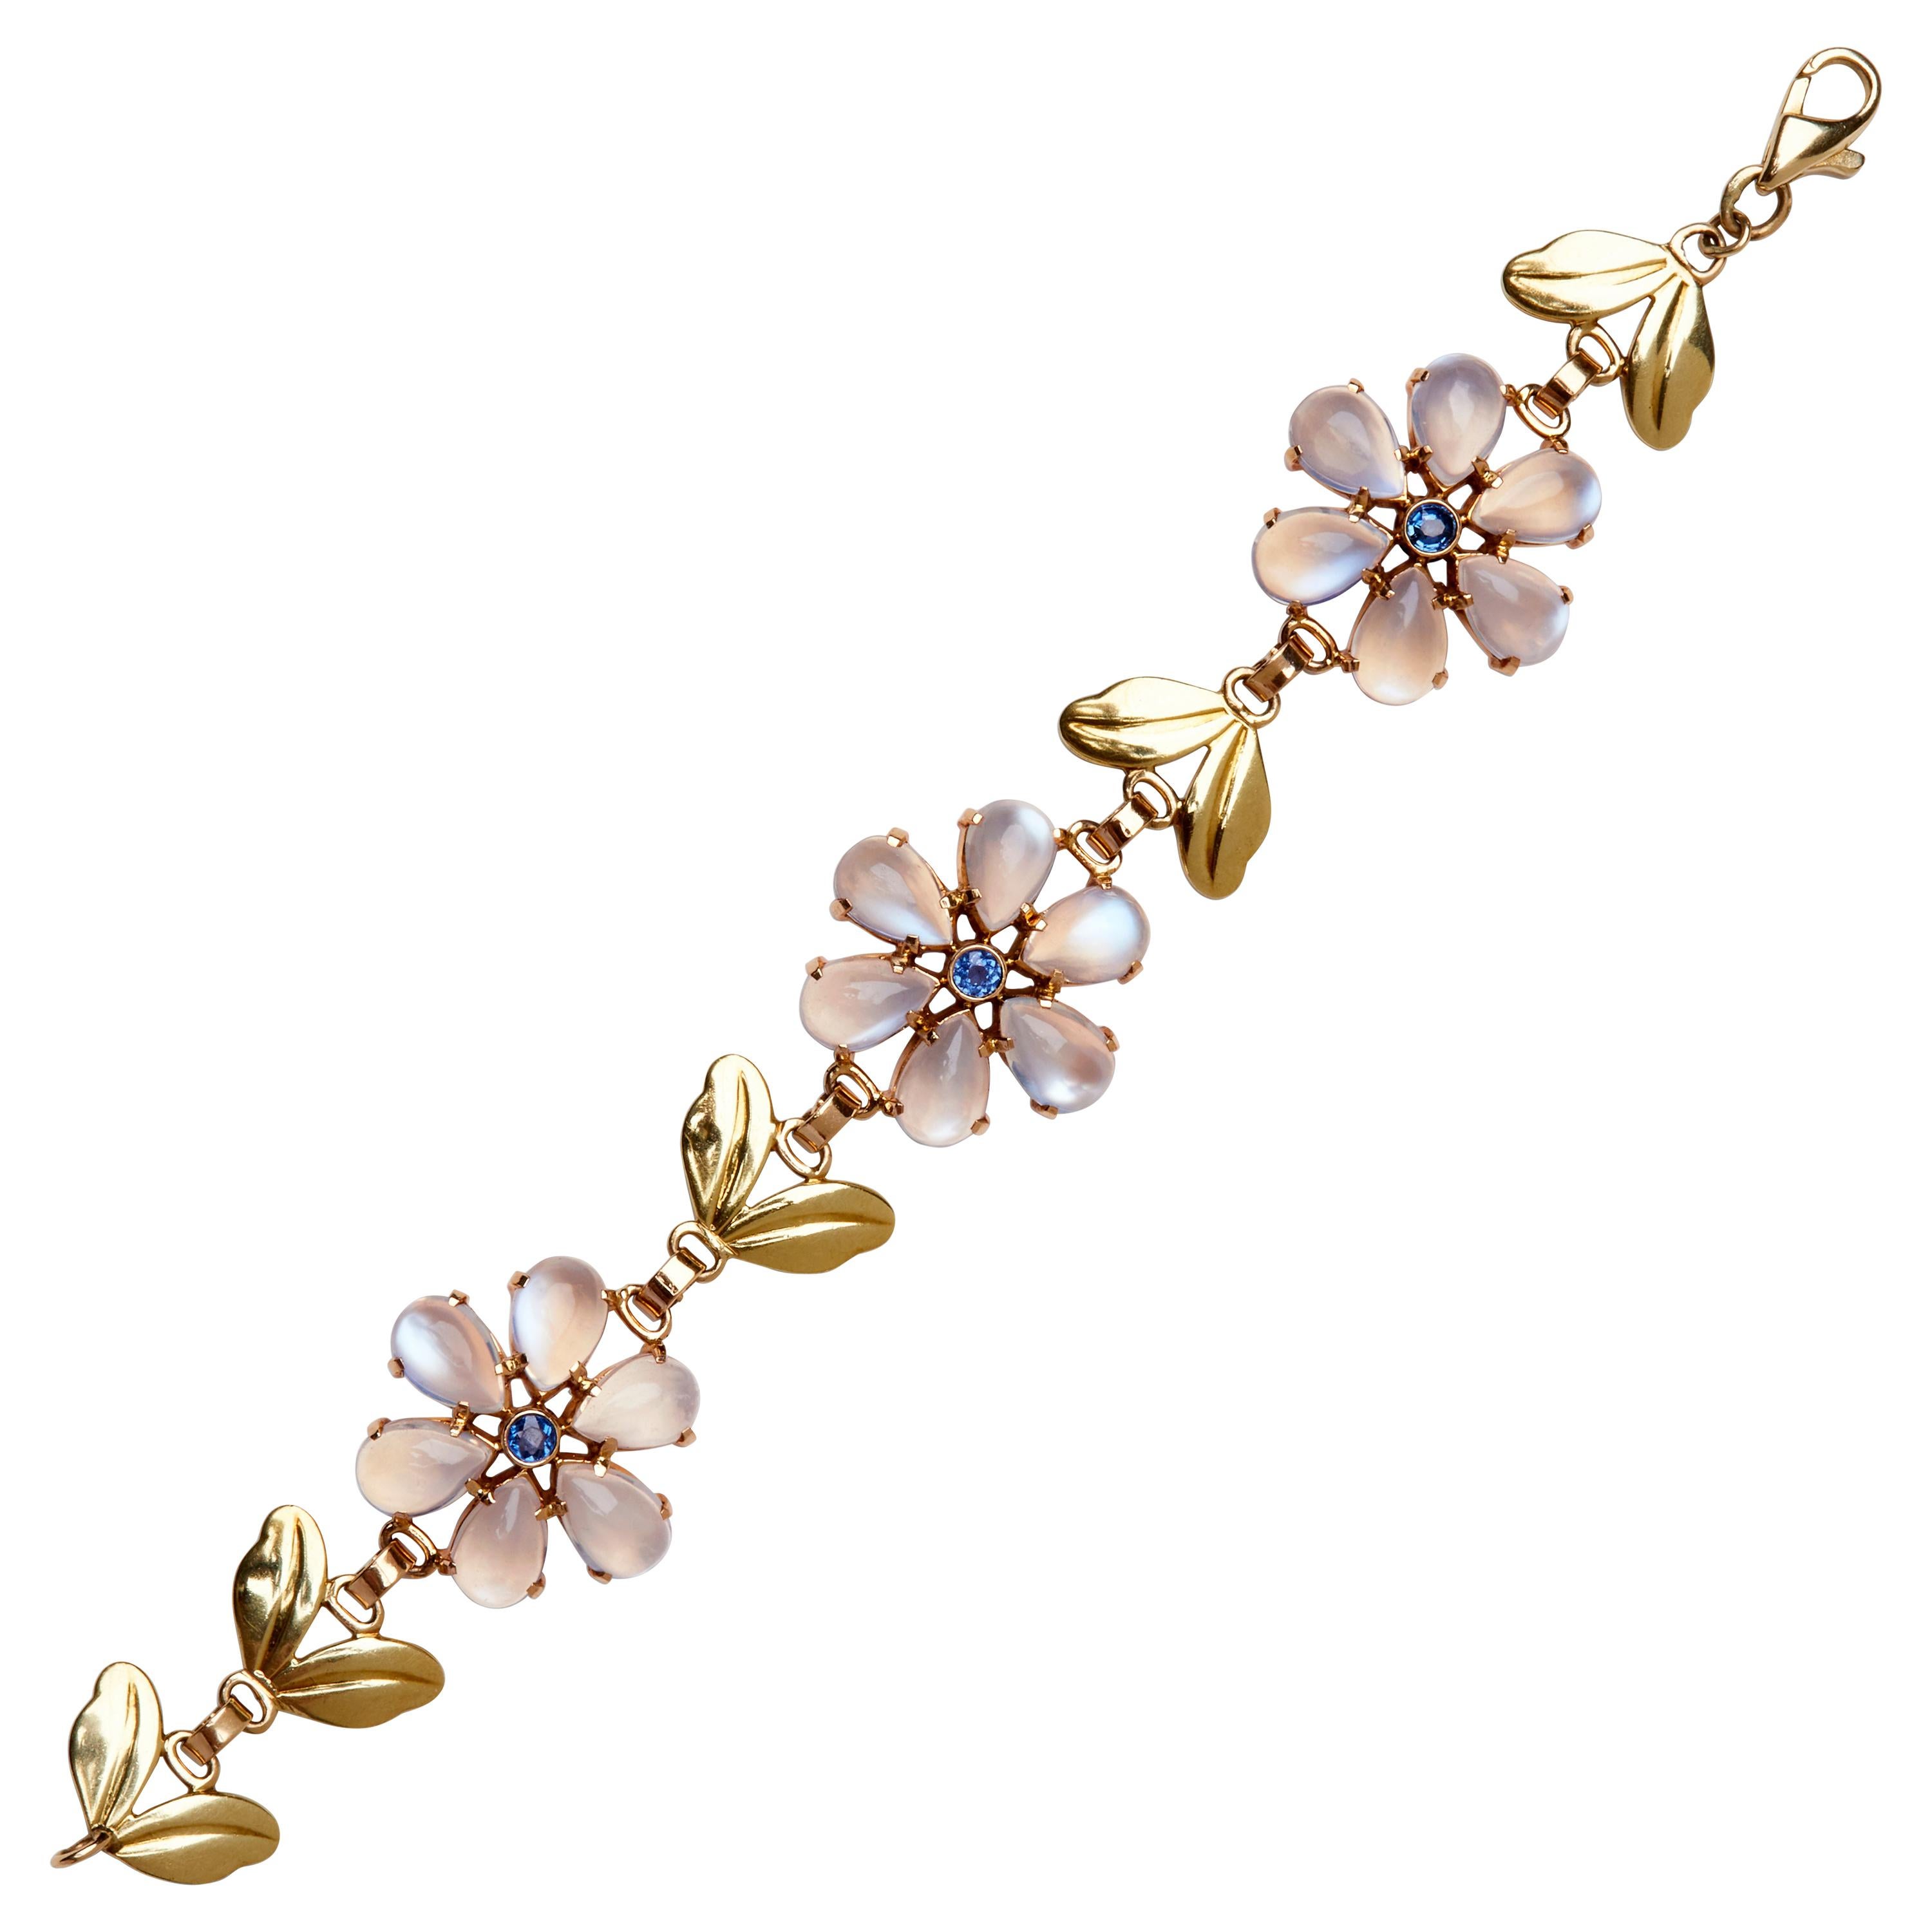 Cet élégant bracelet des années 1940 de Tiffany & Co. présente trois stations à motif floral séparées par des maillons en forme de feuille. Chaque fleur est composée de pétales lumineux en pierre de lune cabochon, accentués par des saphirs bleus